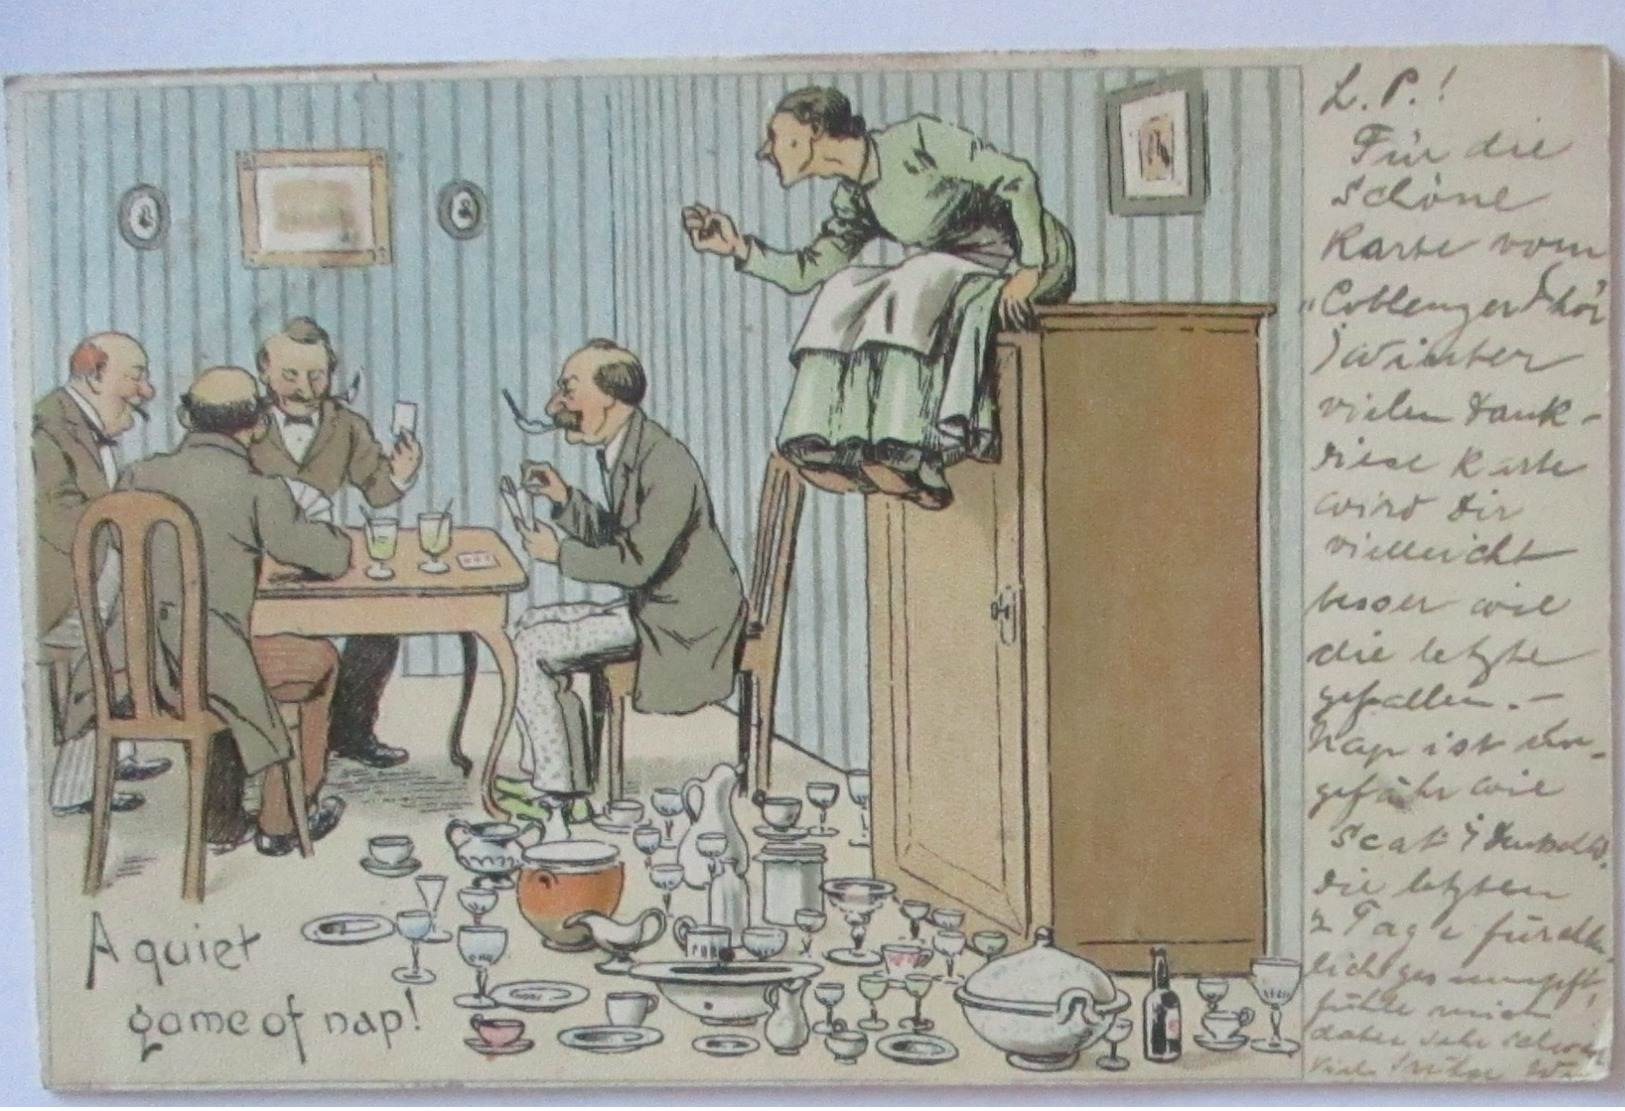 Scherzkarte Männer Beim Kartenspiel, Porzellan, A Quiet Game Of Nap 1899 (71179) - Humor